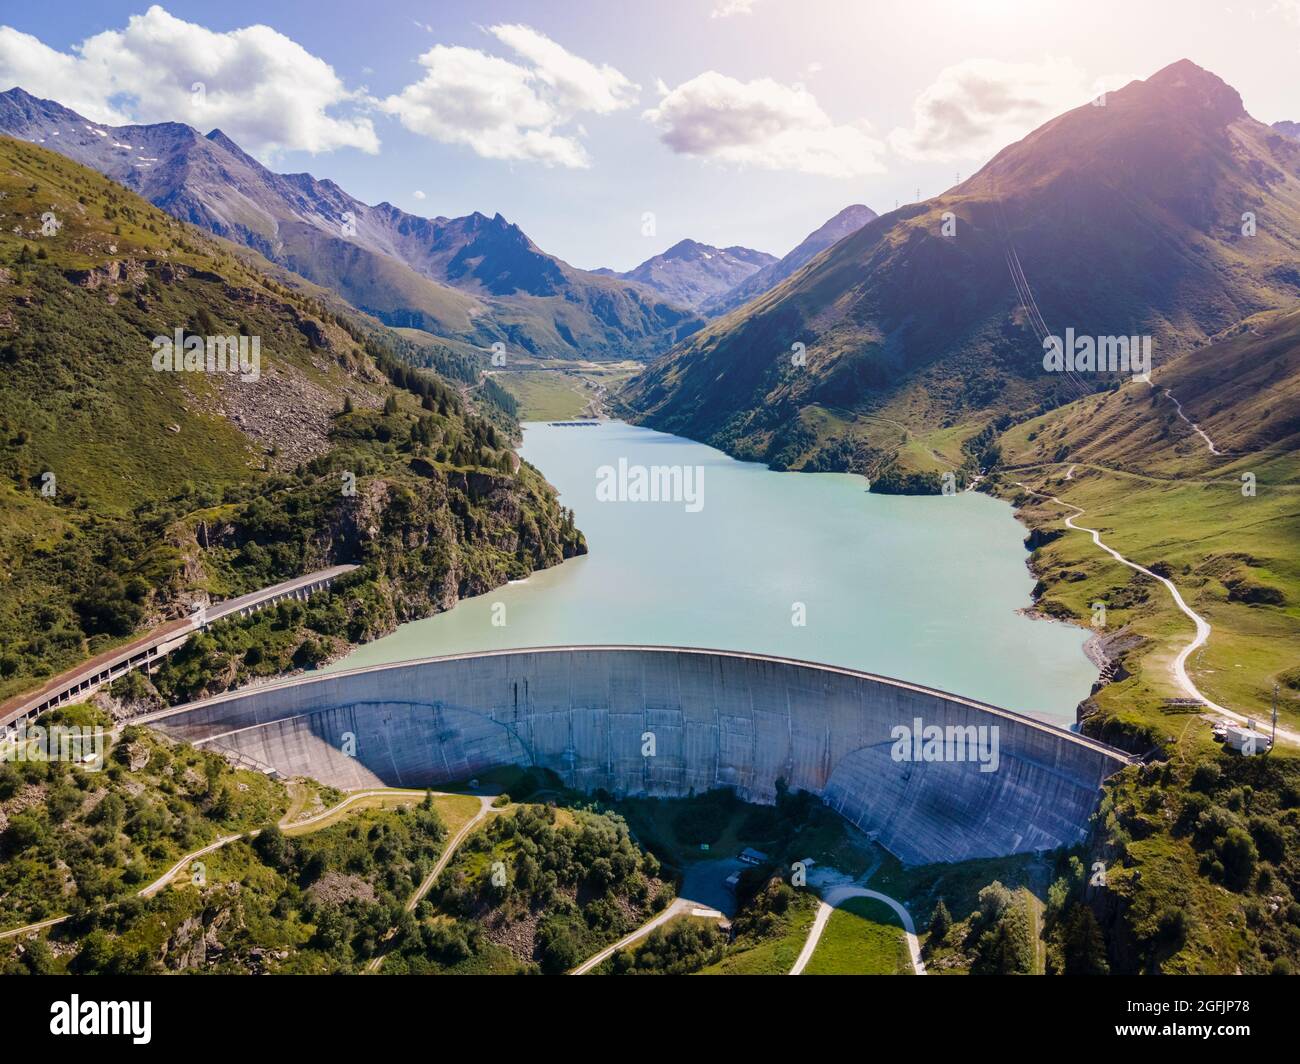 Barrage d'eau et lac réservoir dans les Alpes suisses générant de l'hydroélectricité. Vue aérienne du barrage voûte entre les montagnes. Énergie verte hydroélectrique pour soutenir Banque D'Images